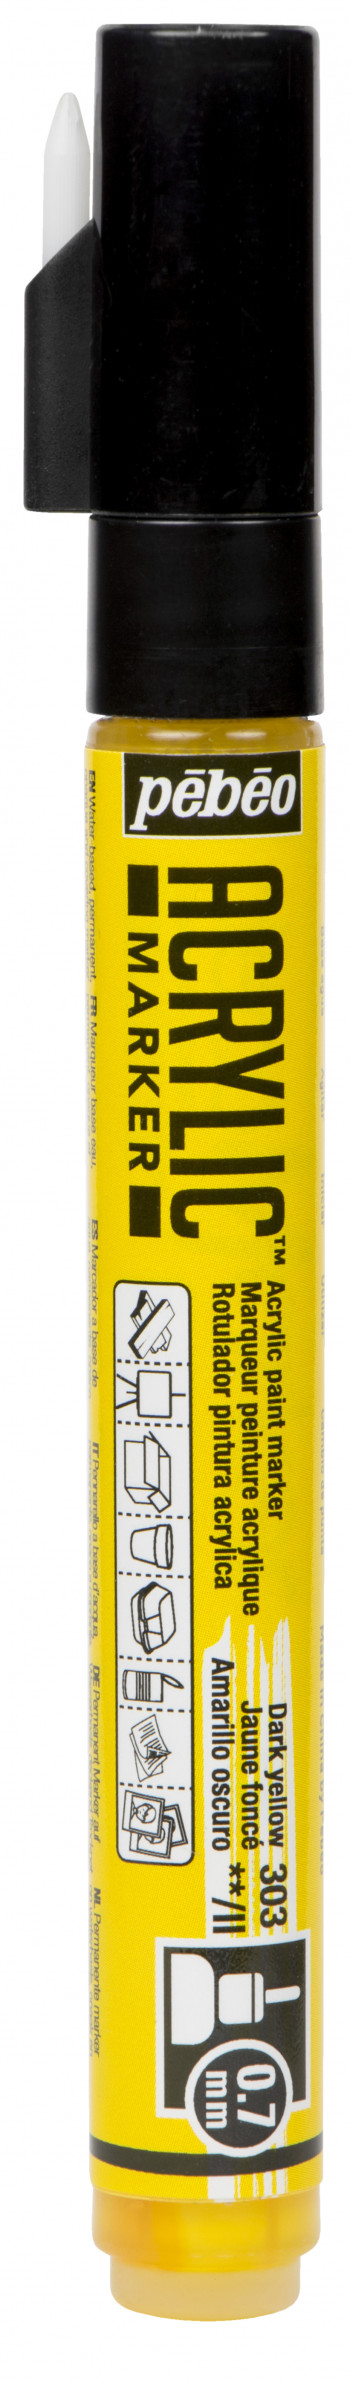 Маркер акриловый Acrylic Marker 0.7 мм круглый темно-желтый